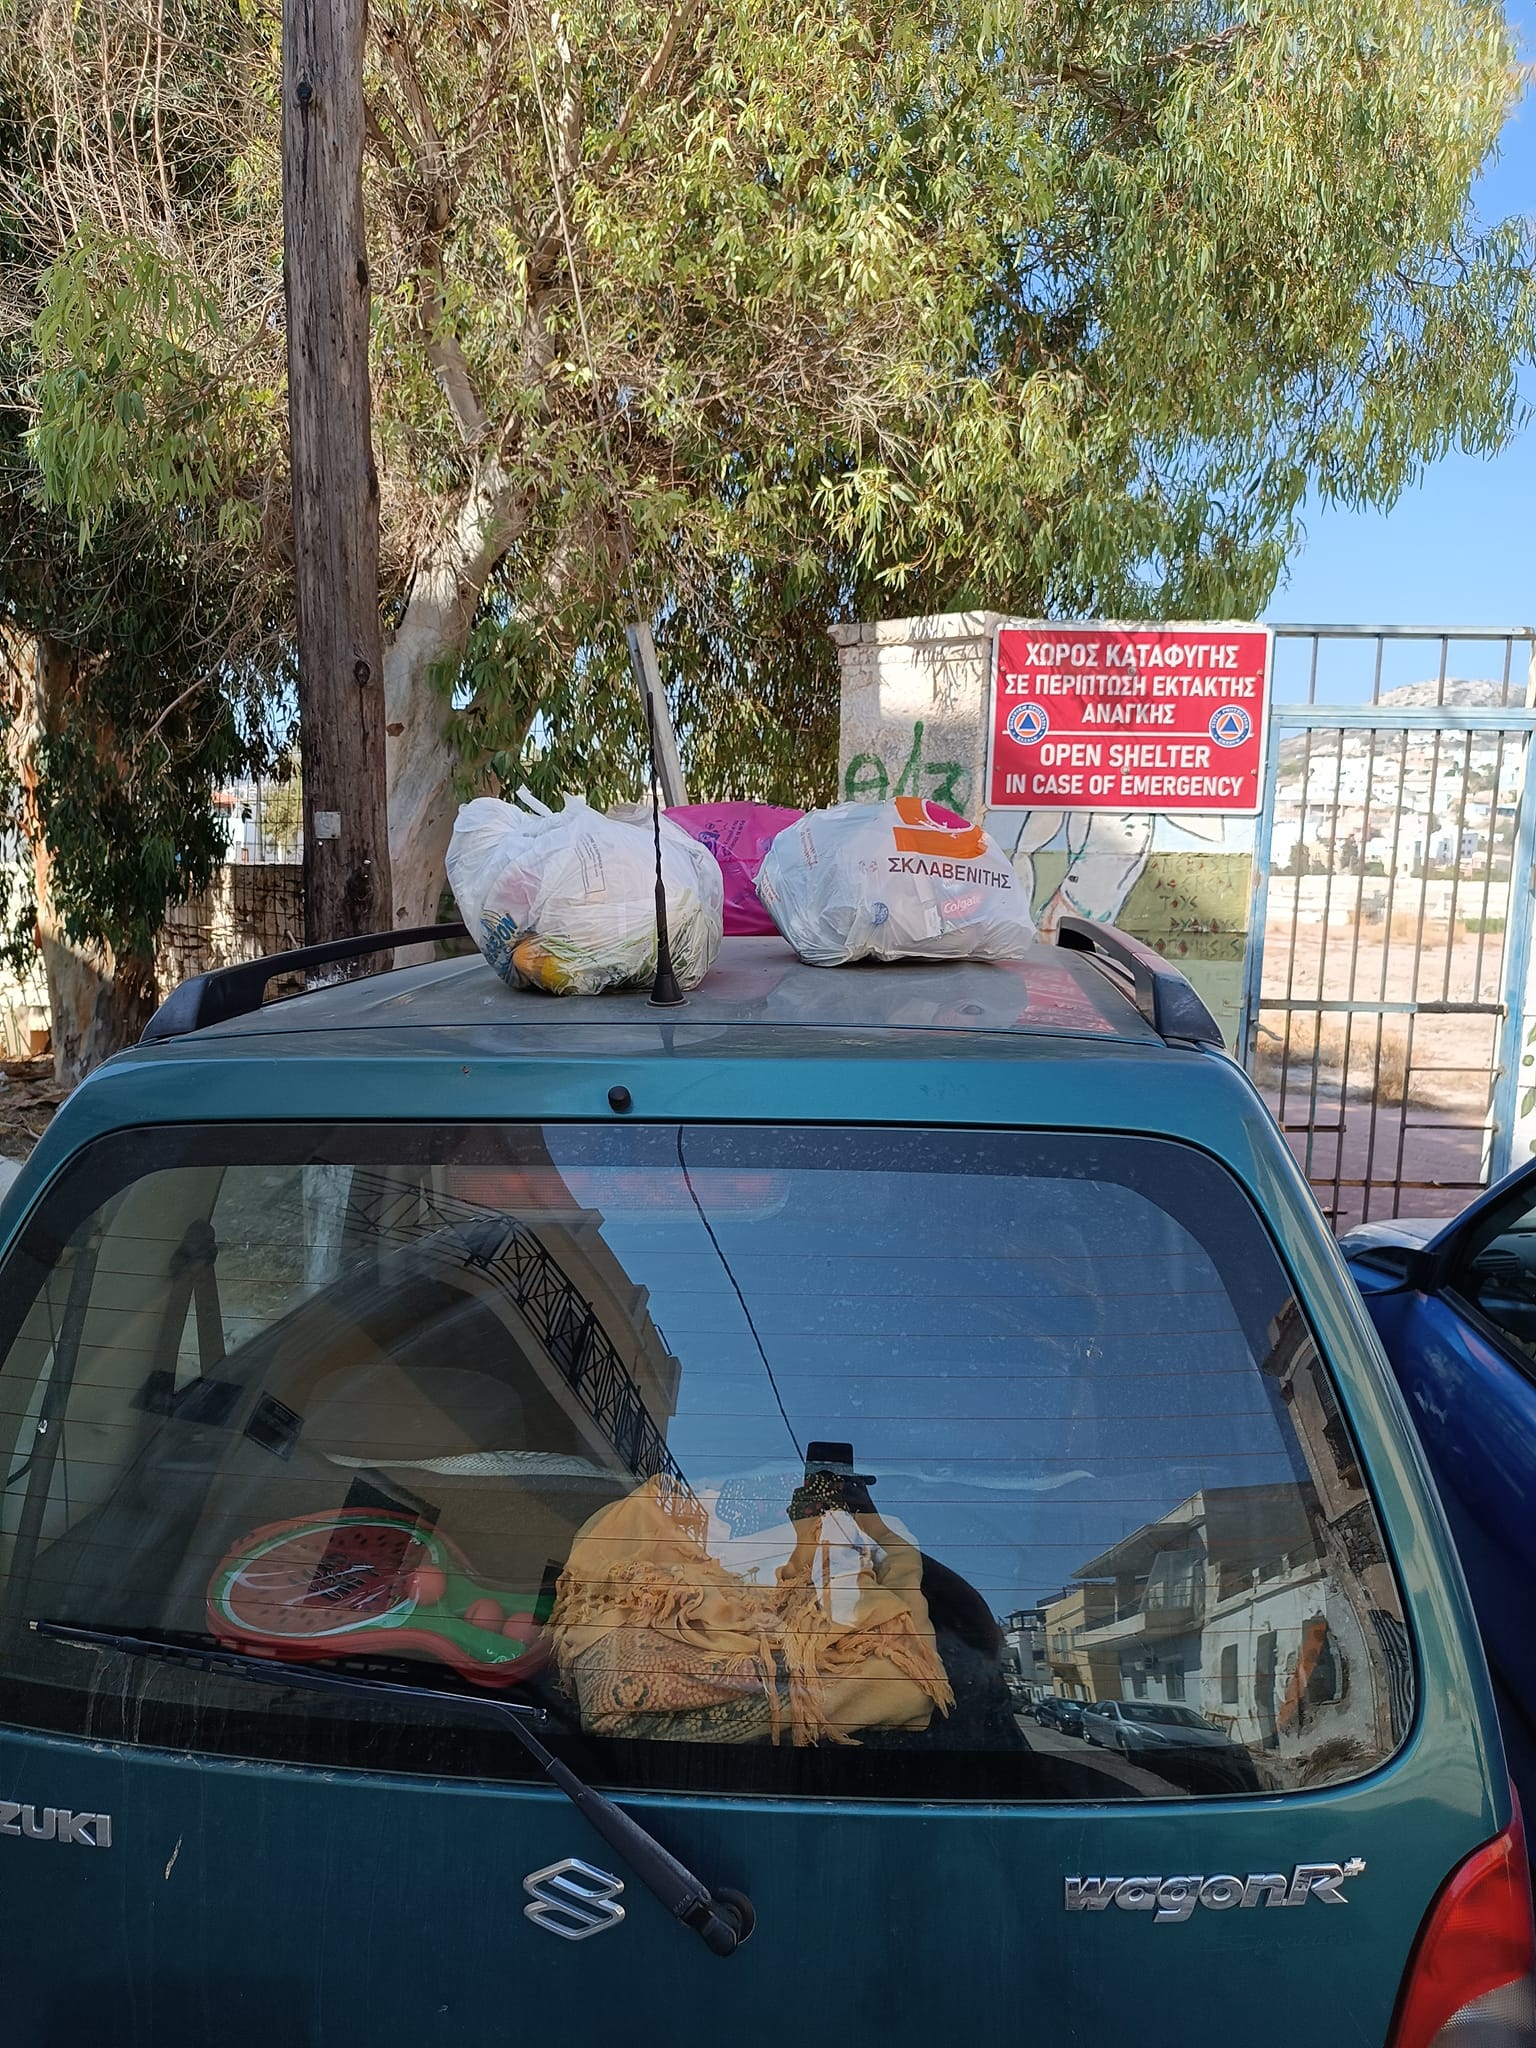 Σύρος: Αντί για κλήση, του πέταξαν σκουπίδια στο αυτοκίνητο